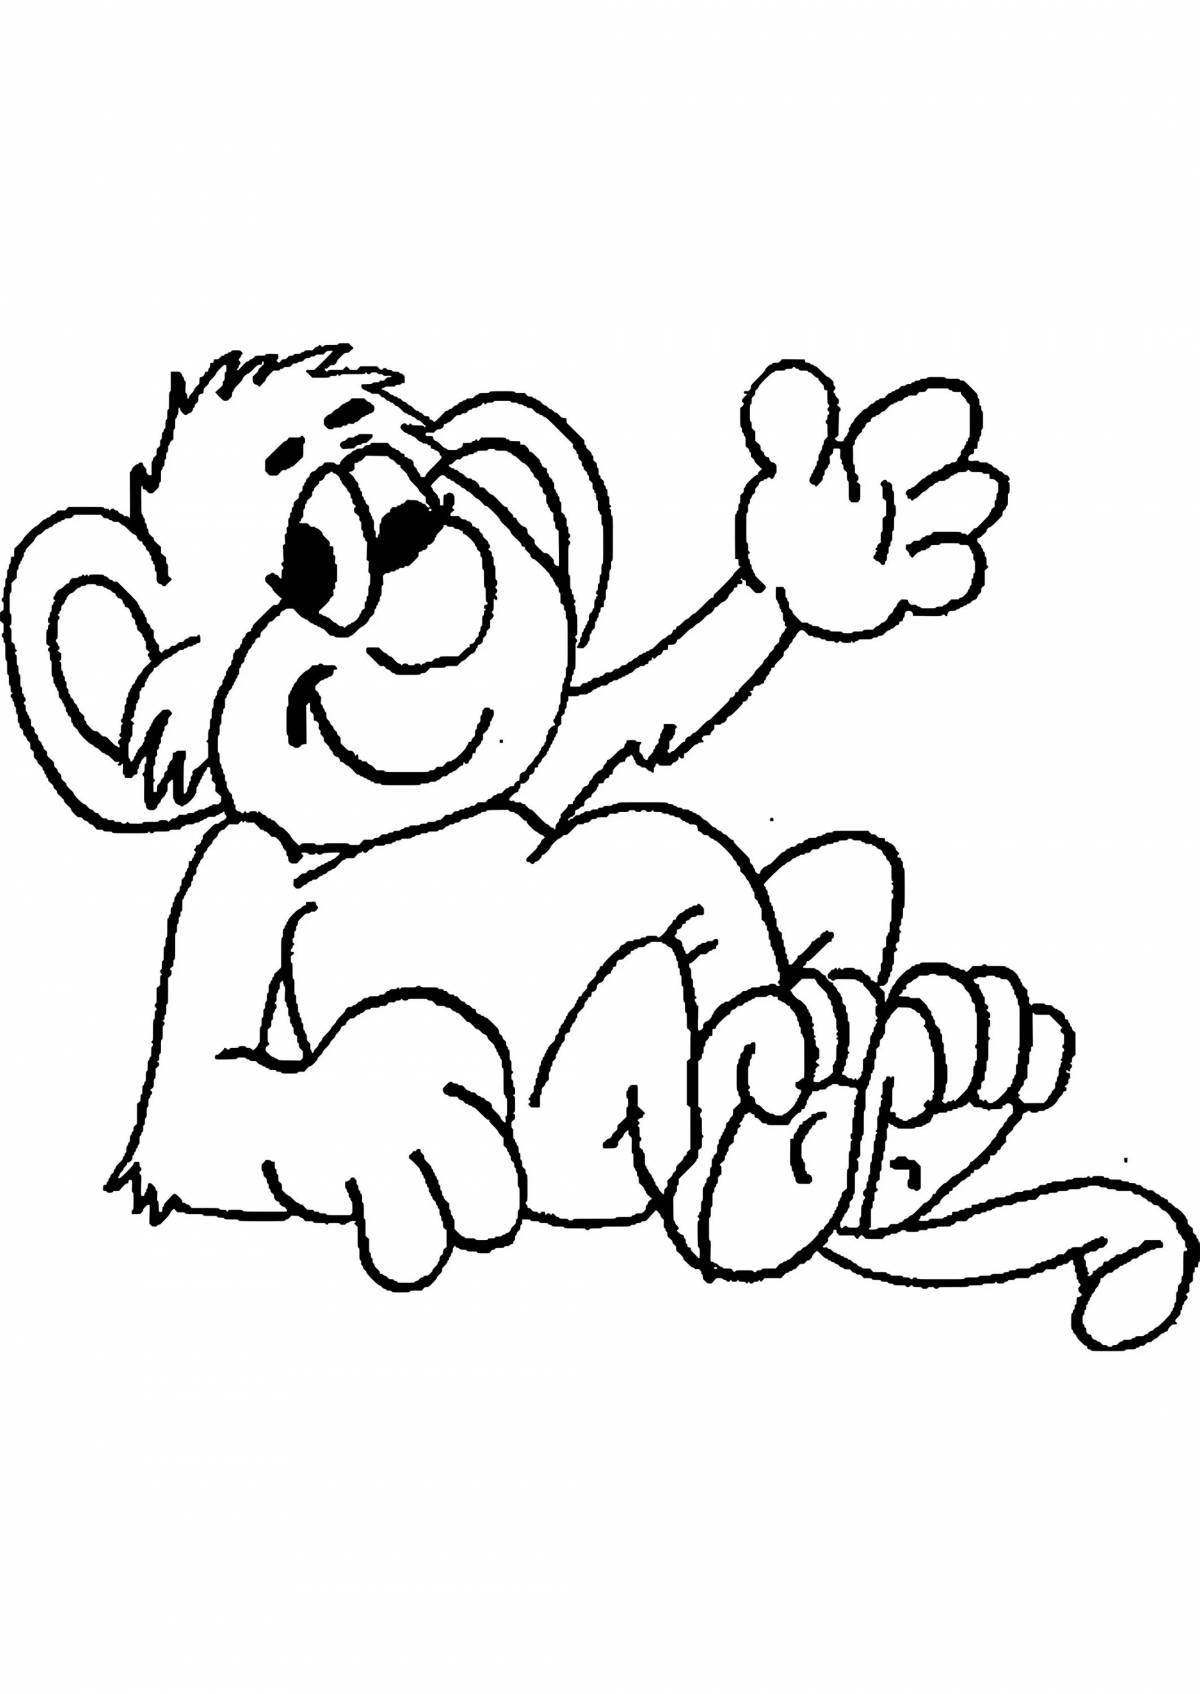 Живой рисунок обезьяны для детей